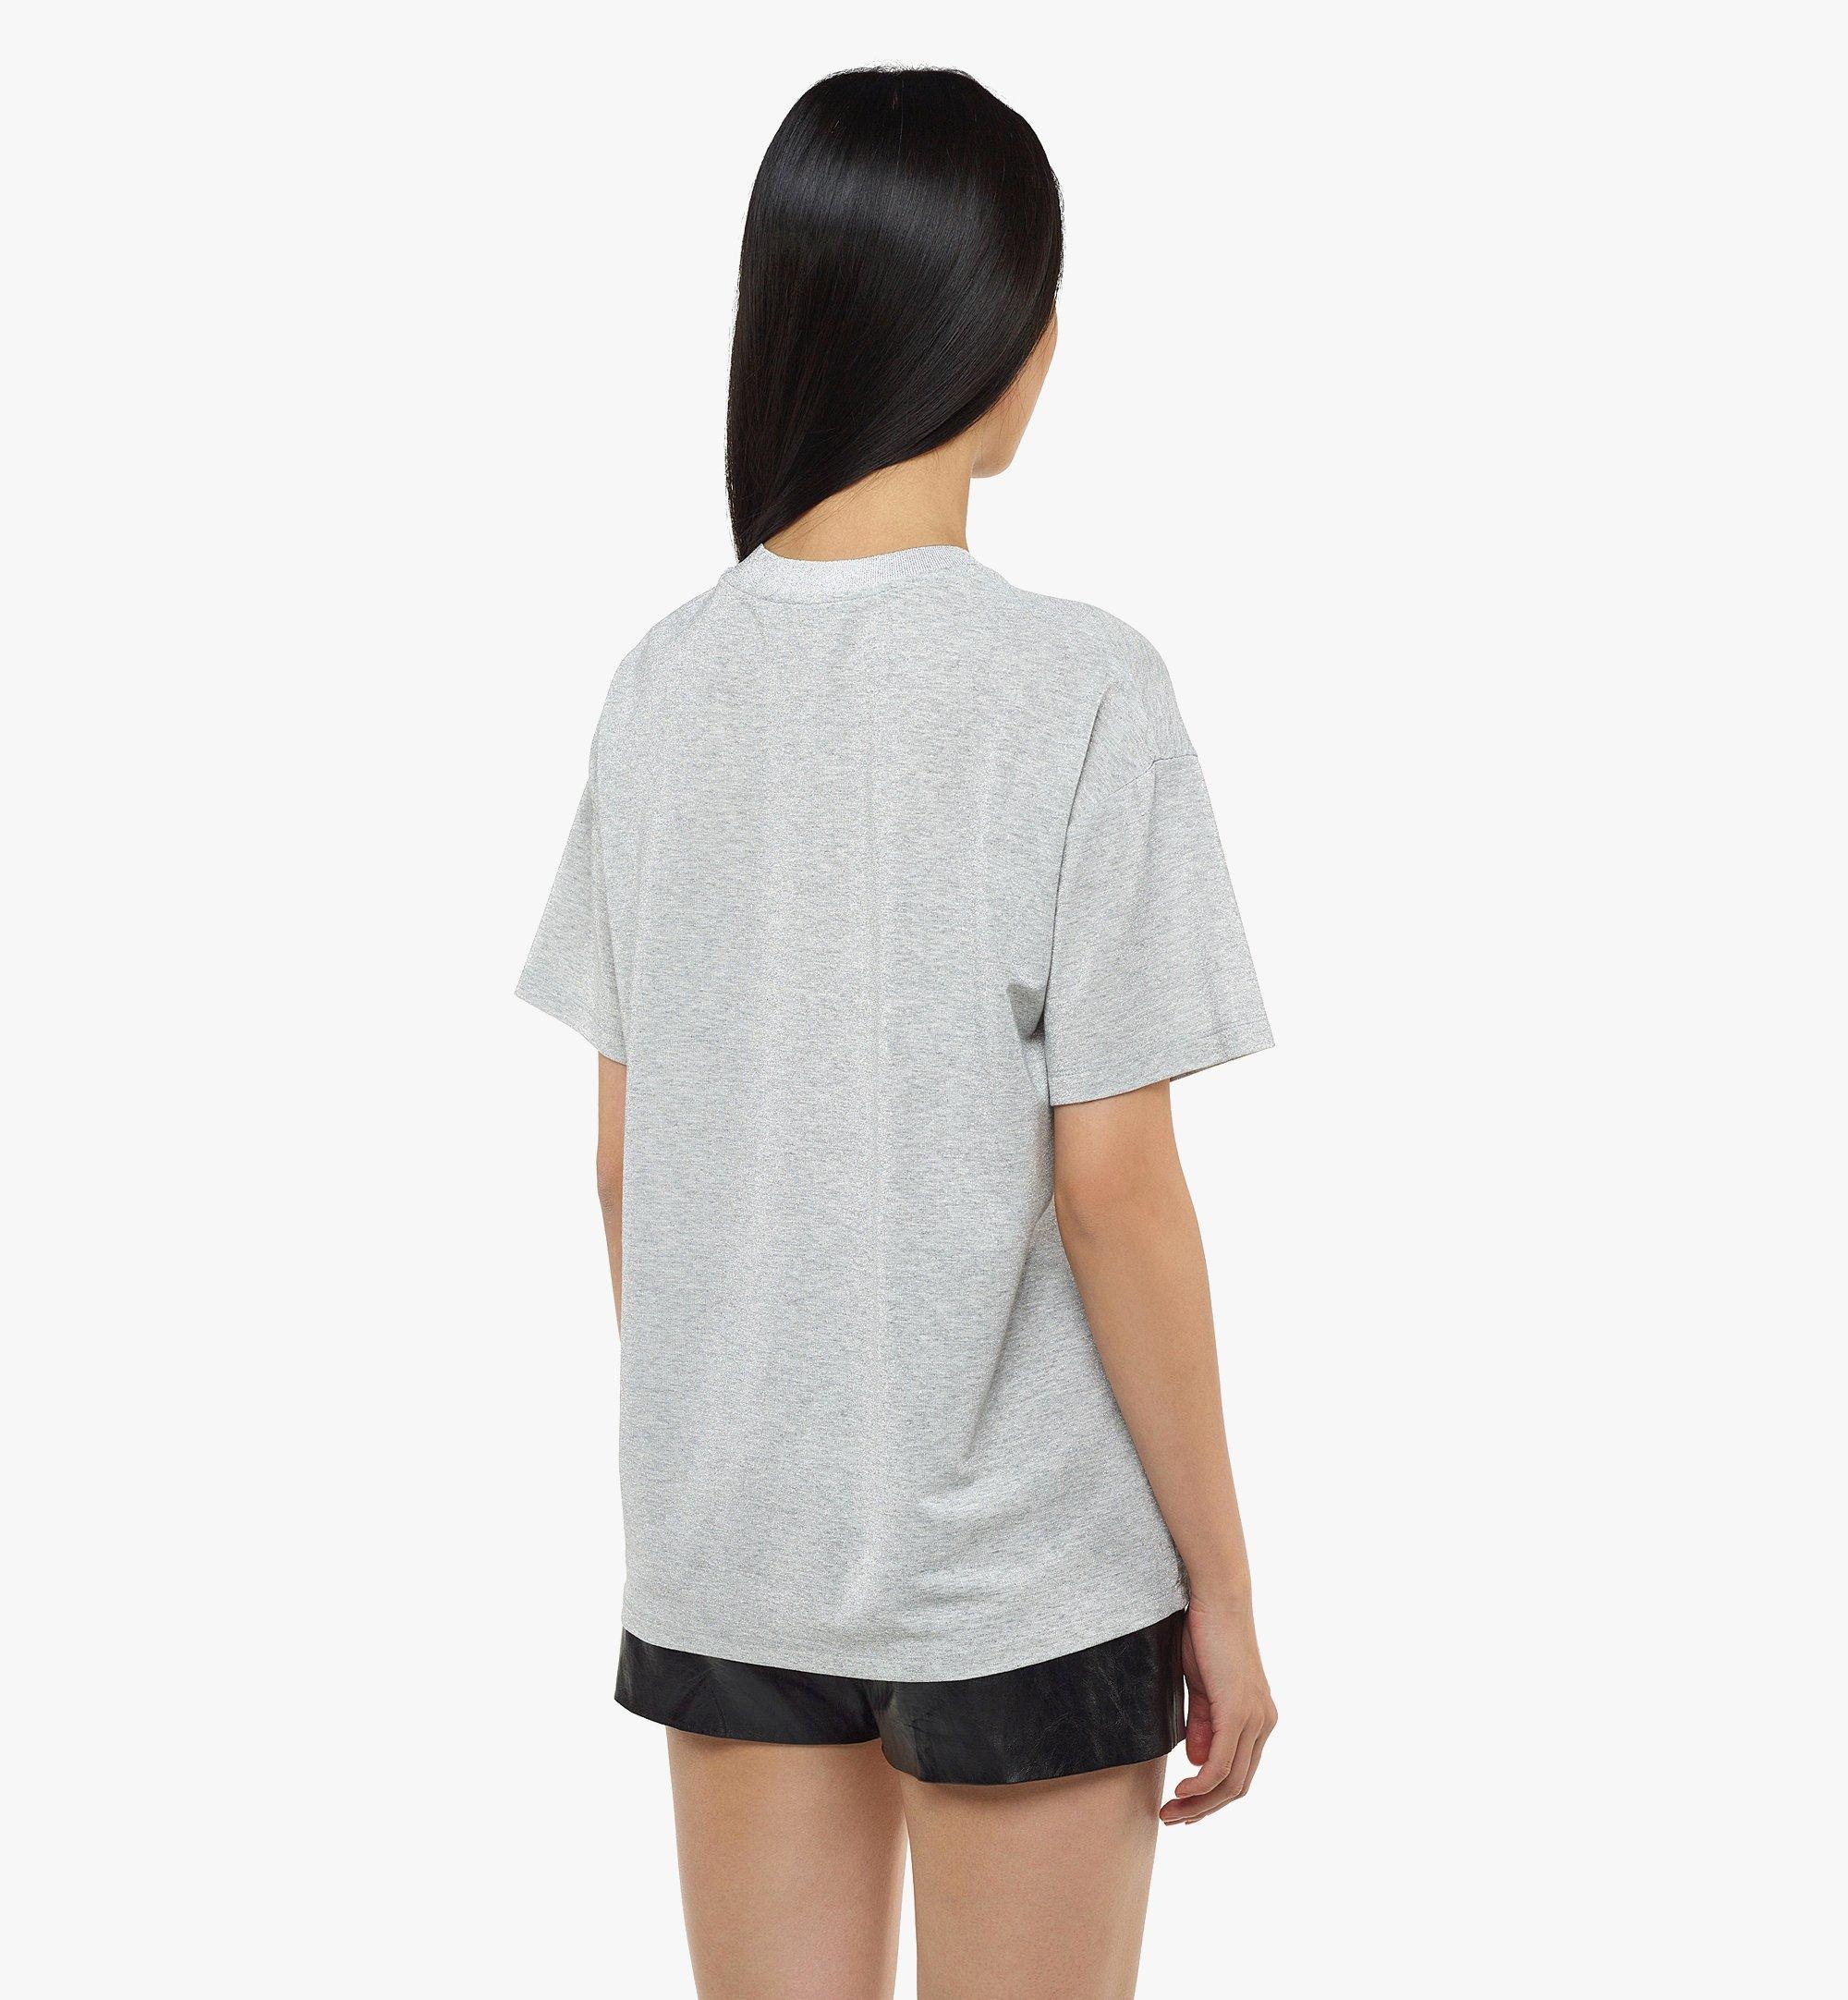 Women’s Meta Cyberpunk Logo T-Shirt in Organic Cotton - 5